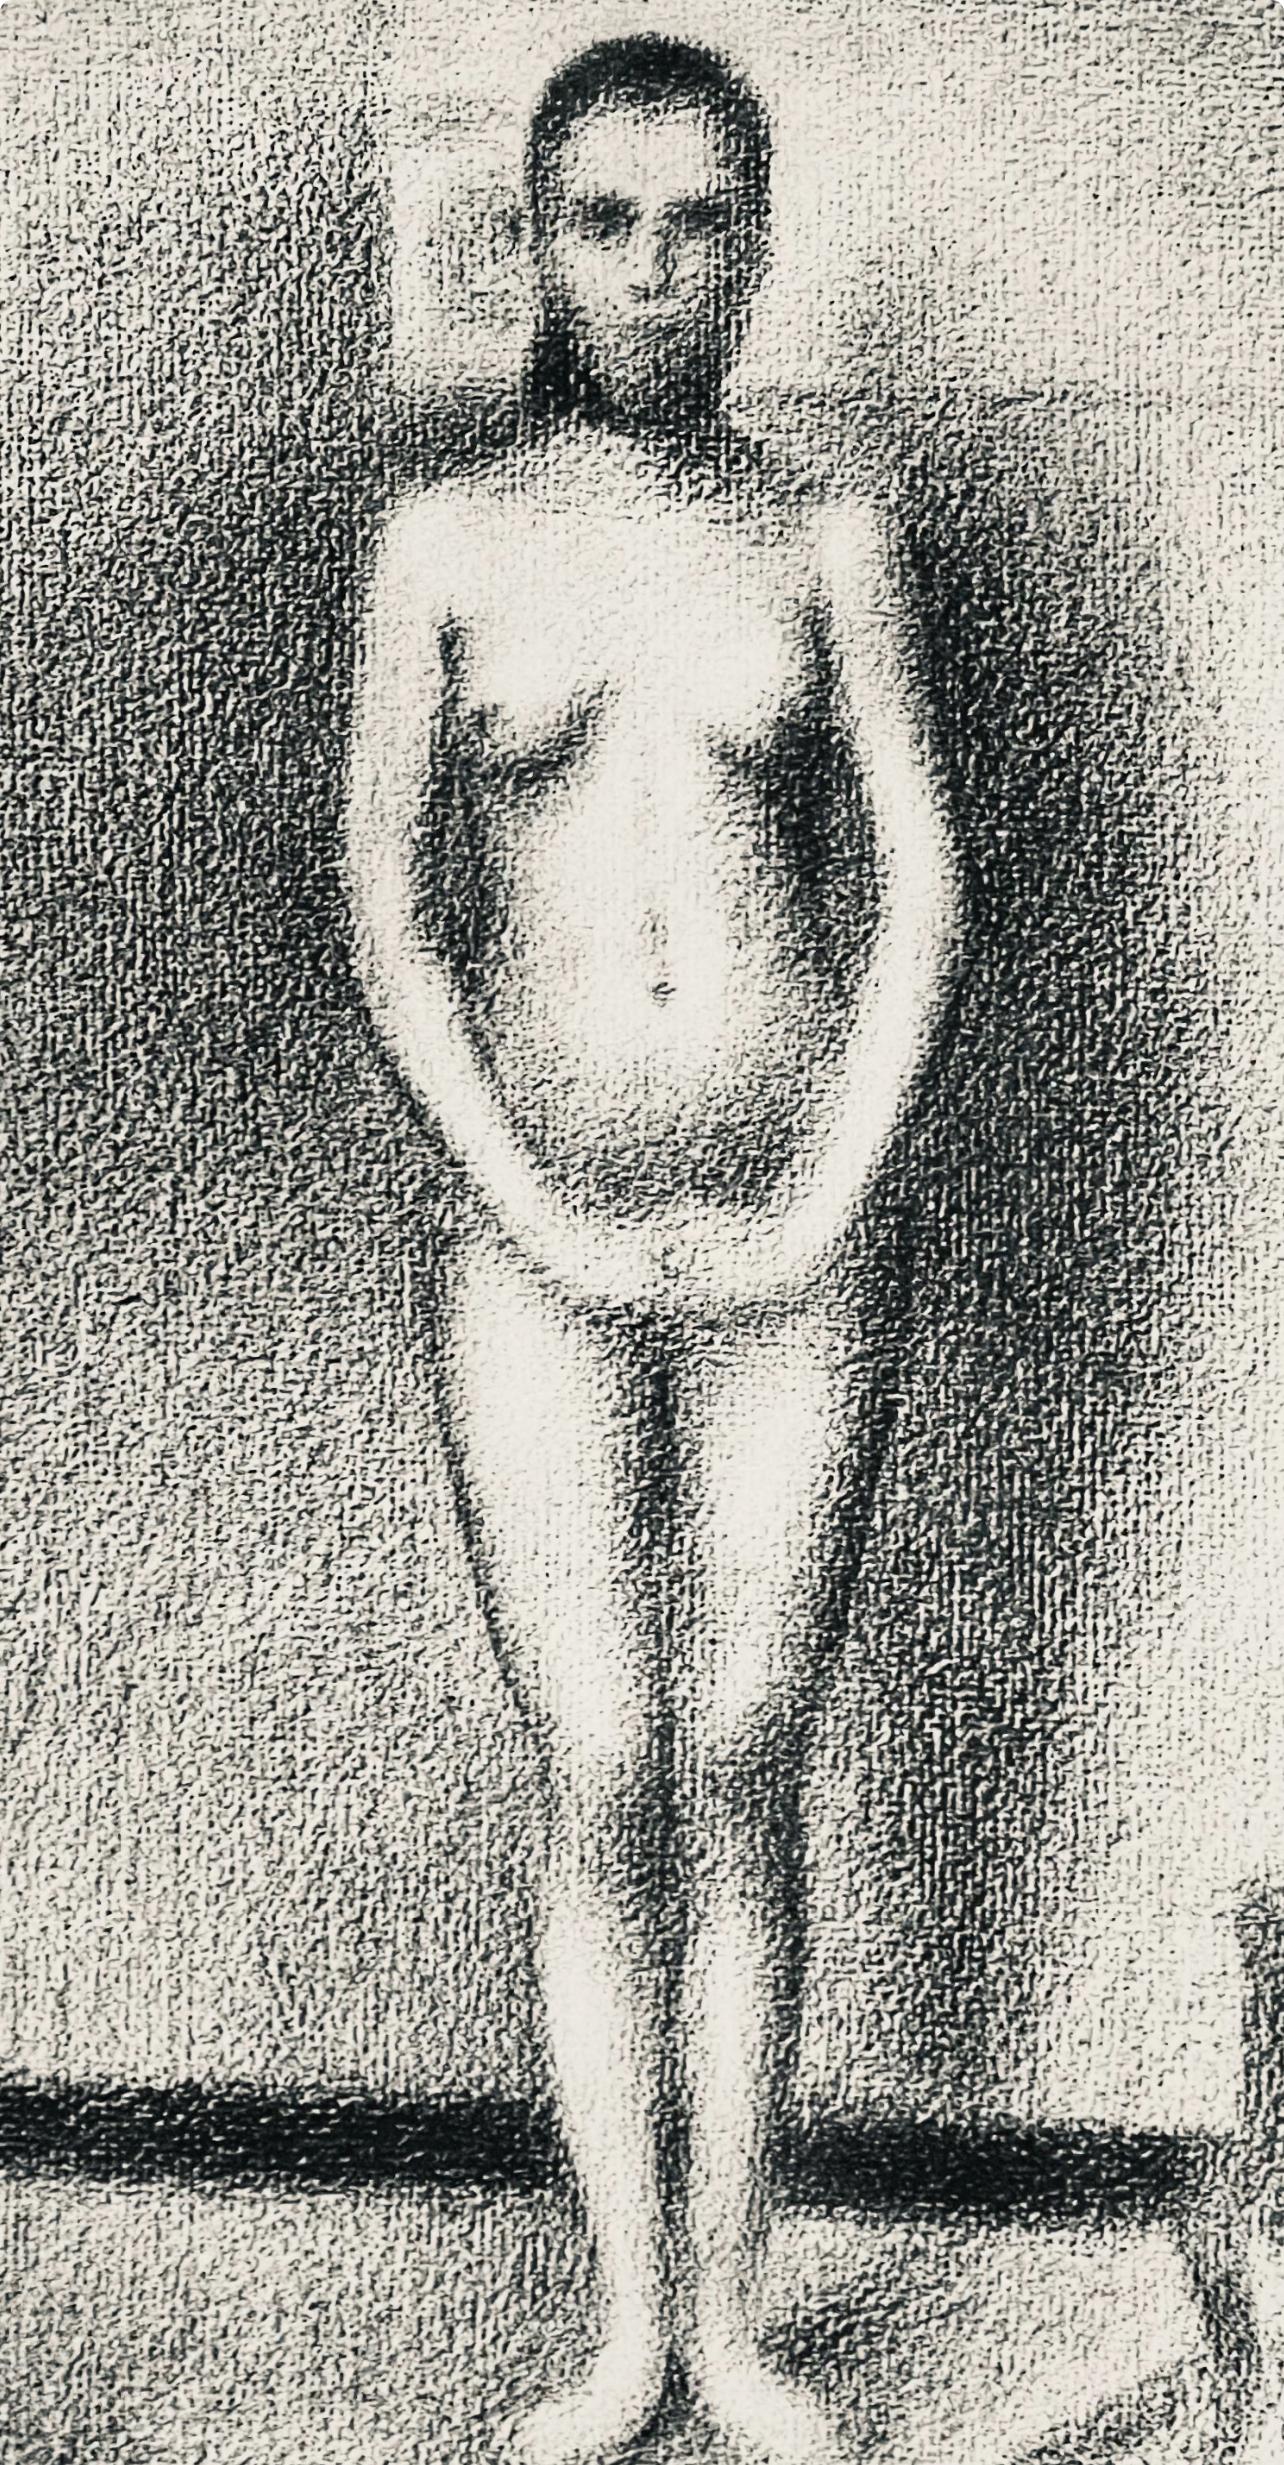 Seurat, La poseuse debout, Seurat (nach) – Print von Georges Seurat